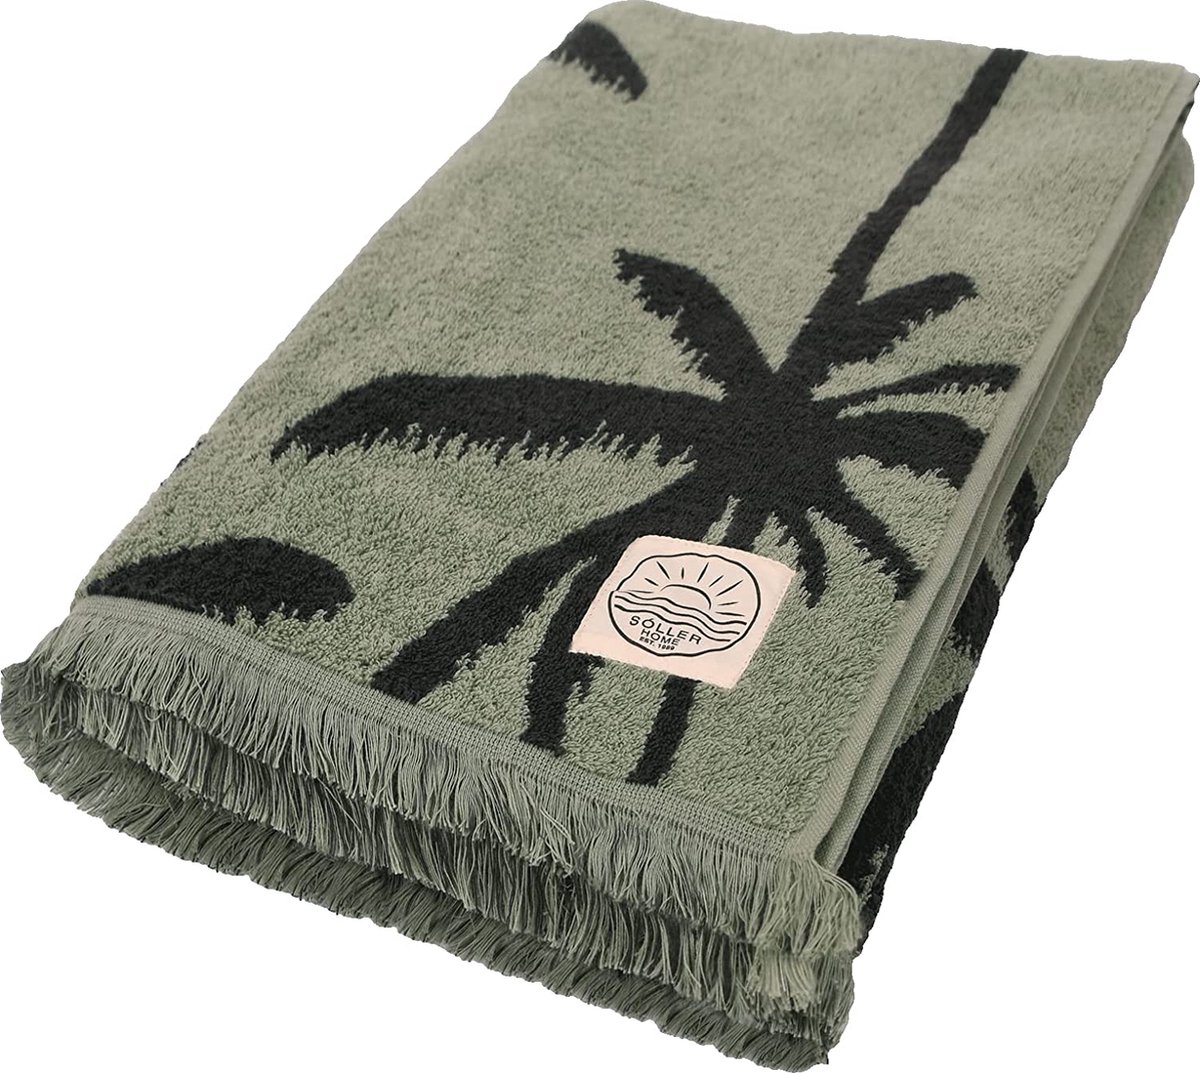 Textilhandel GmbH Strandhanddoek | handdoek | badhanddoek 100x180cm | palmen | groen/antraciet | SóLLER Home EST.1989 | 100% katoen